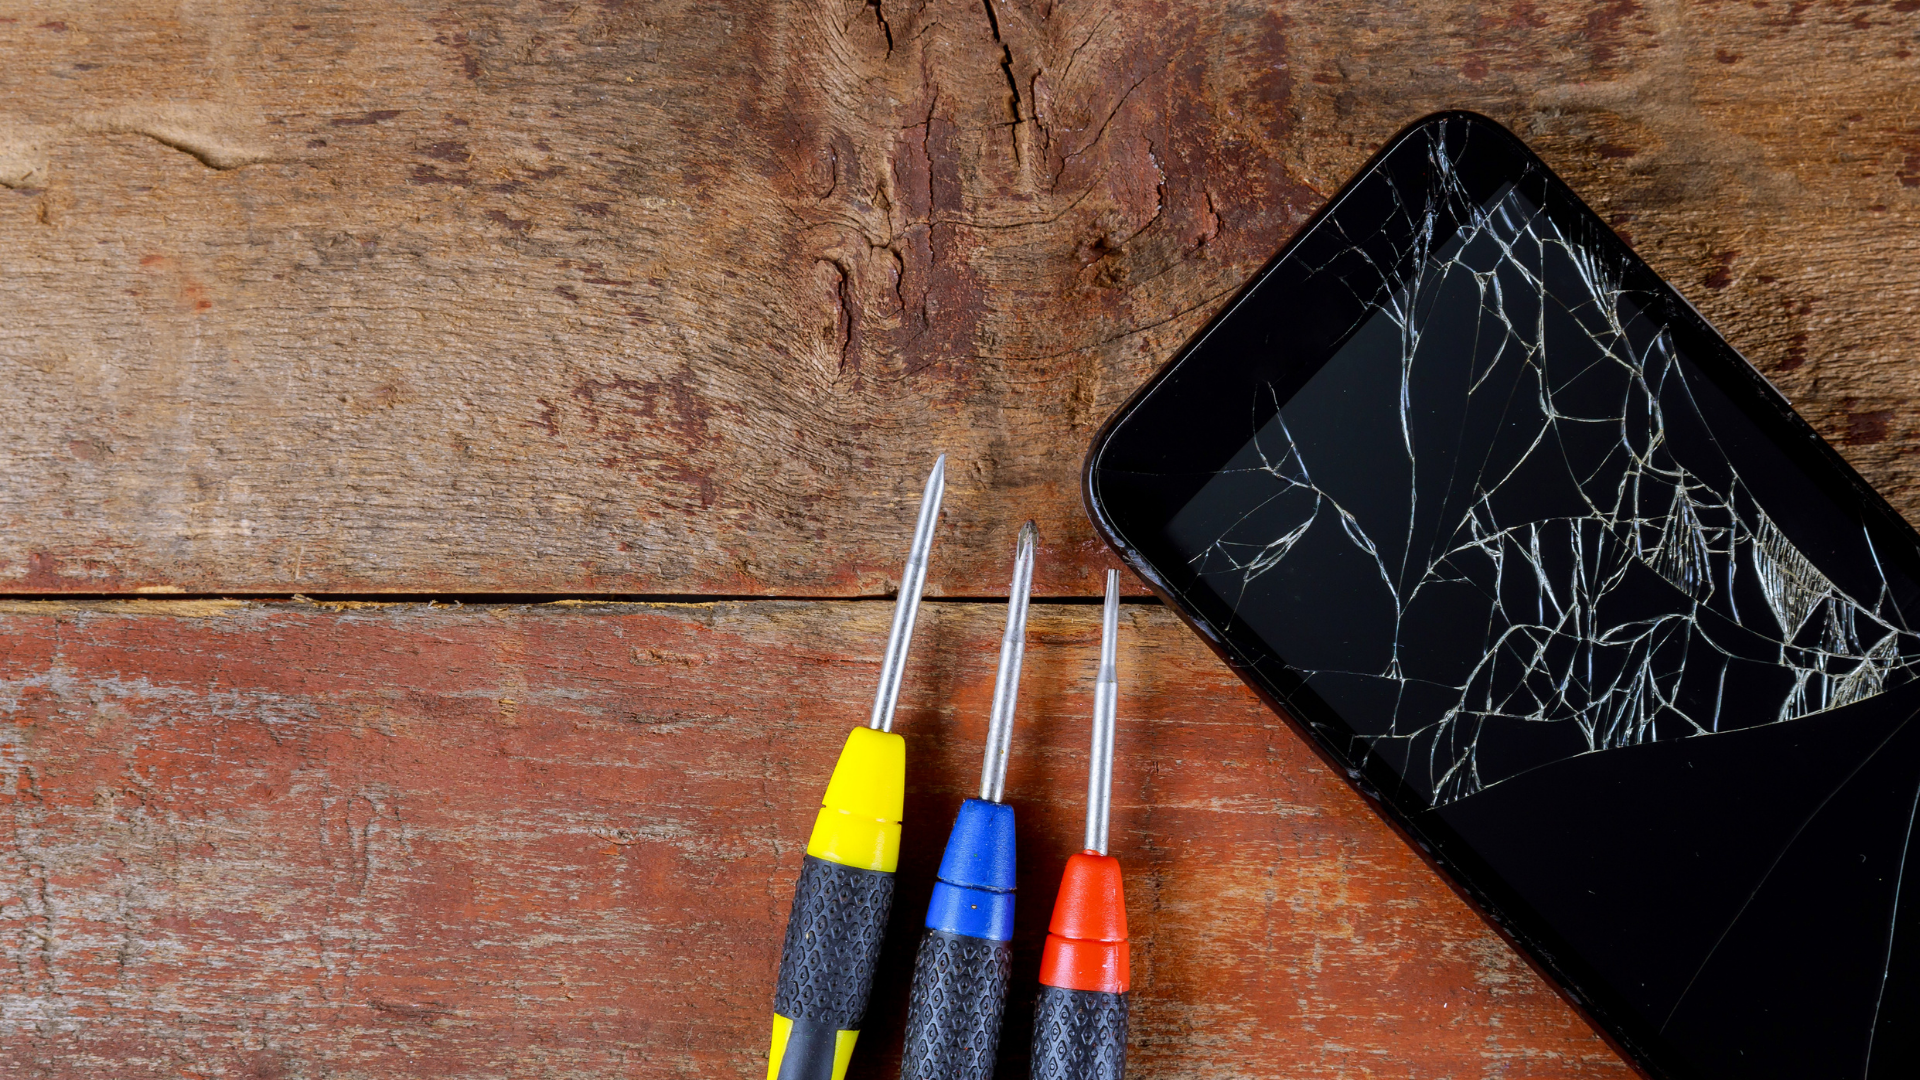 มือถือ Samsung จอค้างทำอย่างไรดี - ศูนย์ซ่อมโทรศัพท์ เชียงใหม่ - ศูนย์ซ่อมโทรศัพท์ เชียงใหม่